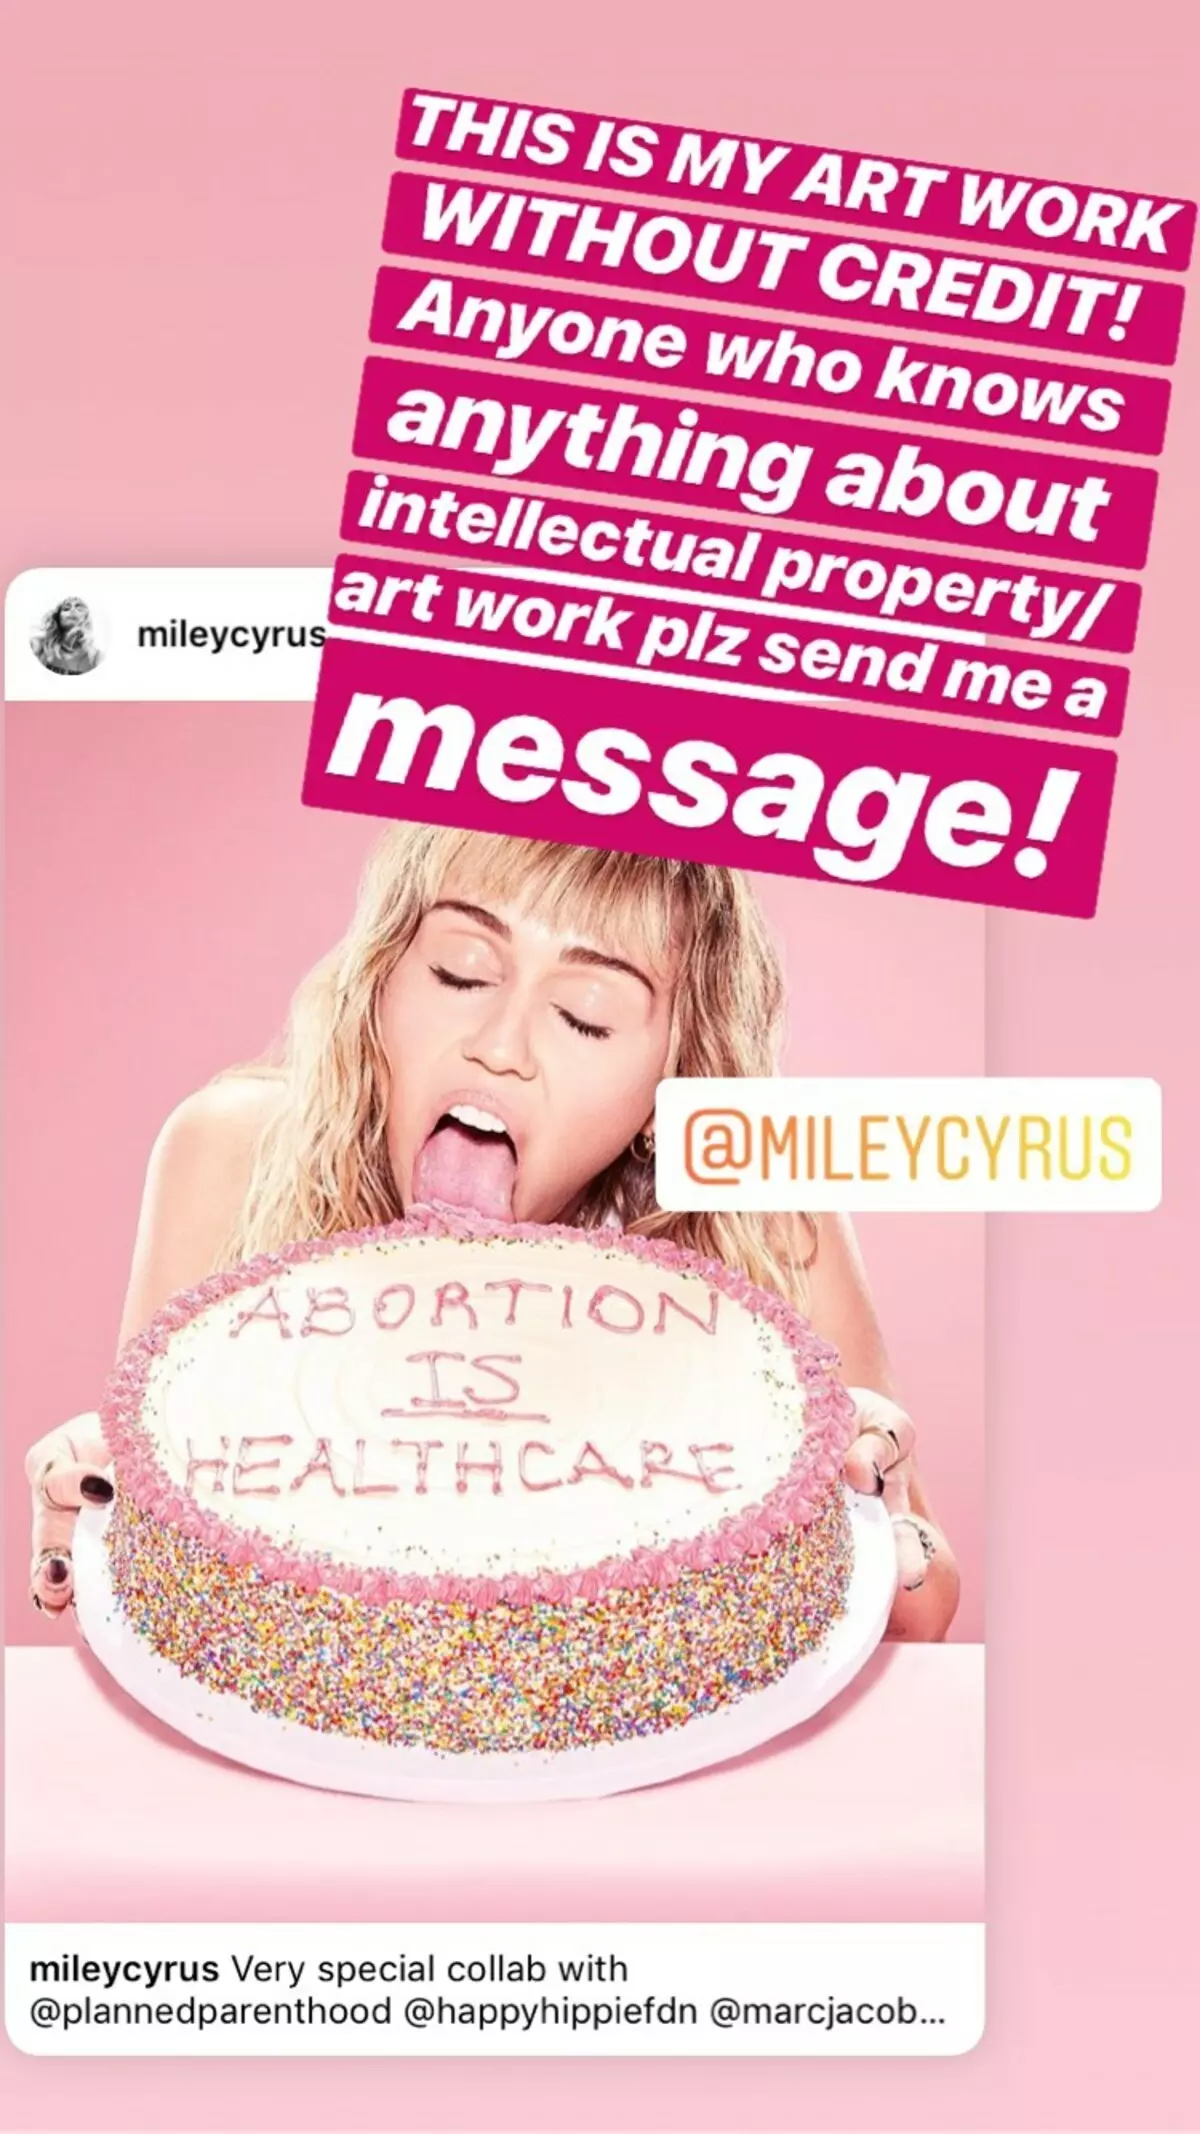 Ο Miley Cyrus ζήτησε συγγνώμη για τη φωτογραφία με ένα κέικ για την υποστήριξη της έκτρωσης 61711_2